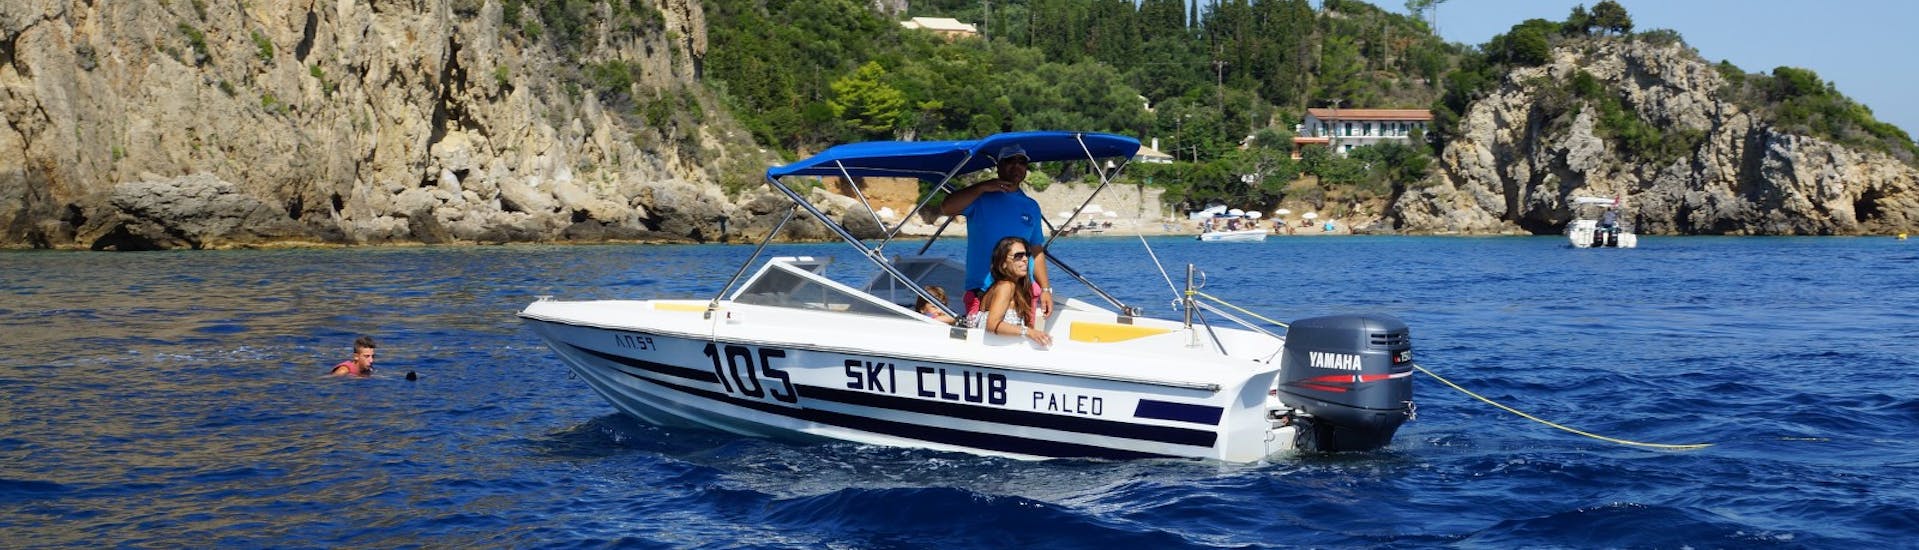 Un bateau sur la mer et une personne faisant de la planche à voile dans l'eau pendant la session de planche à voile à la plage de St. Petros à Corfou avec le Ski Club 105.